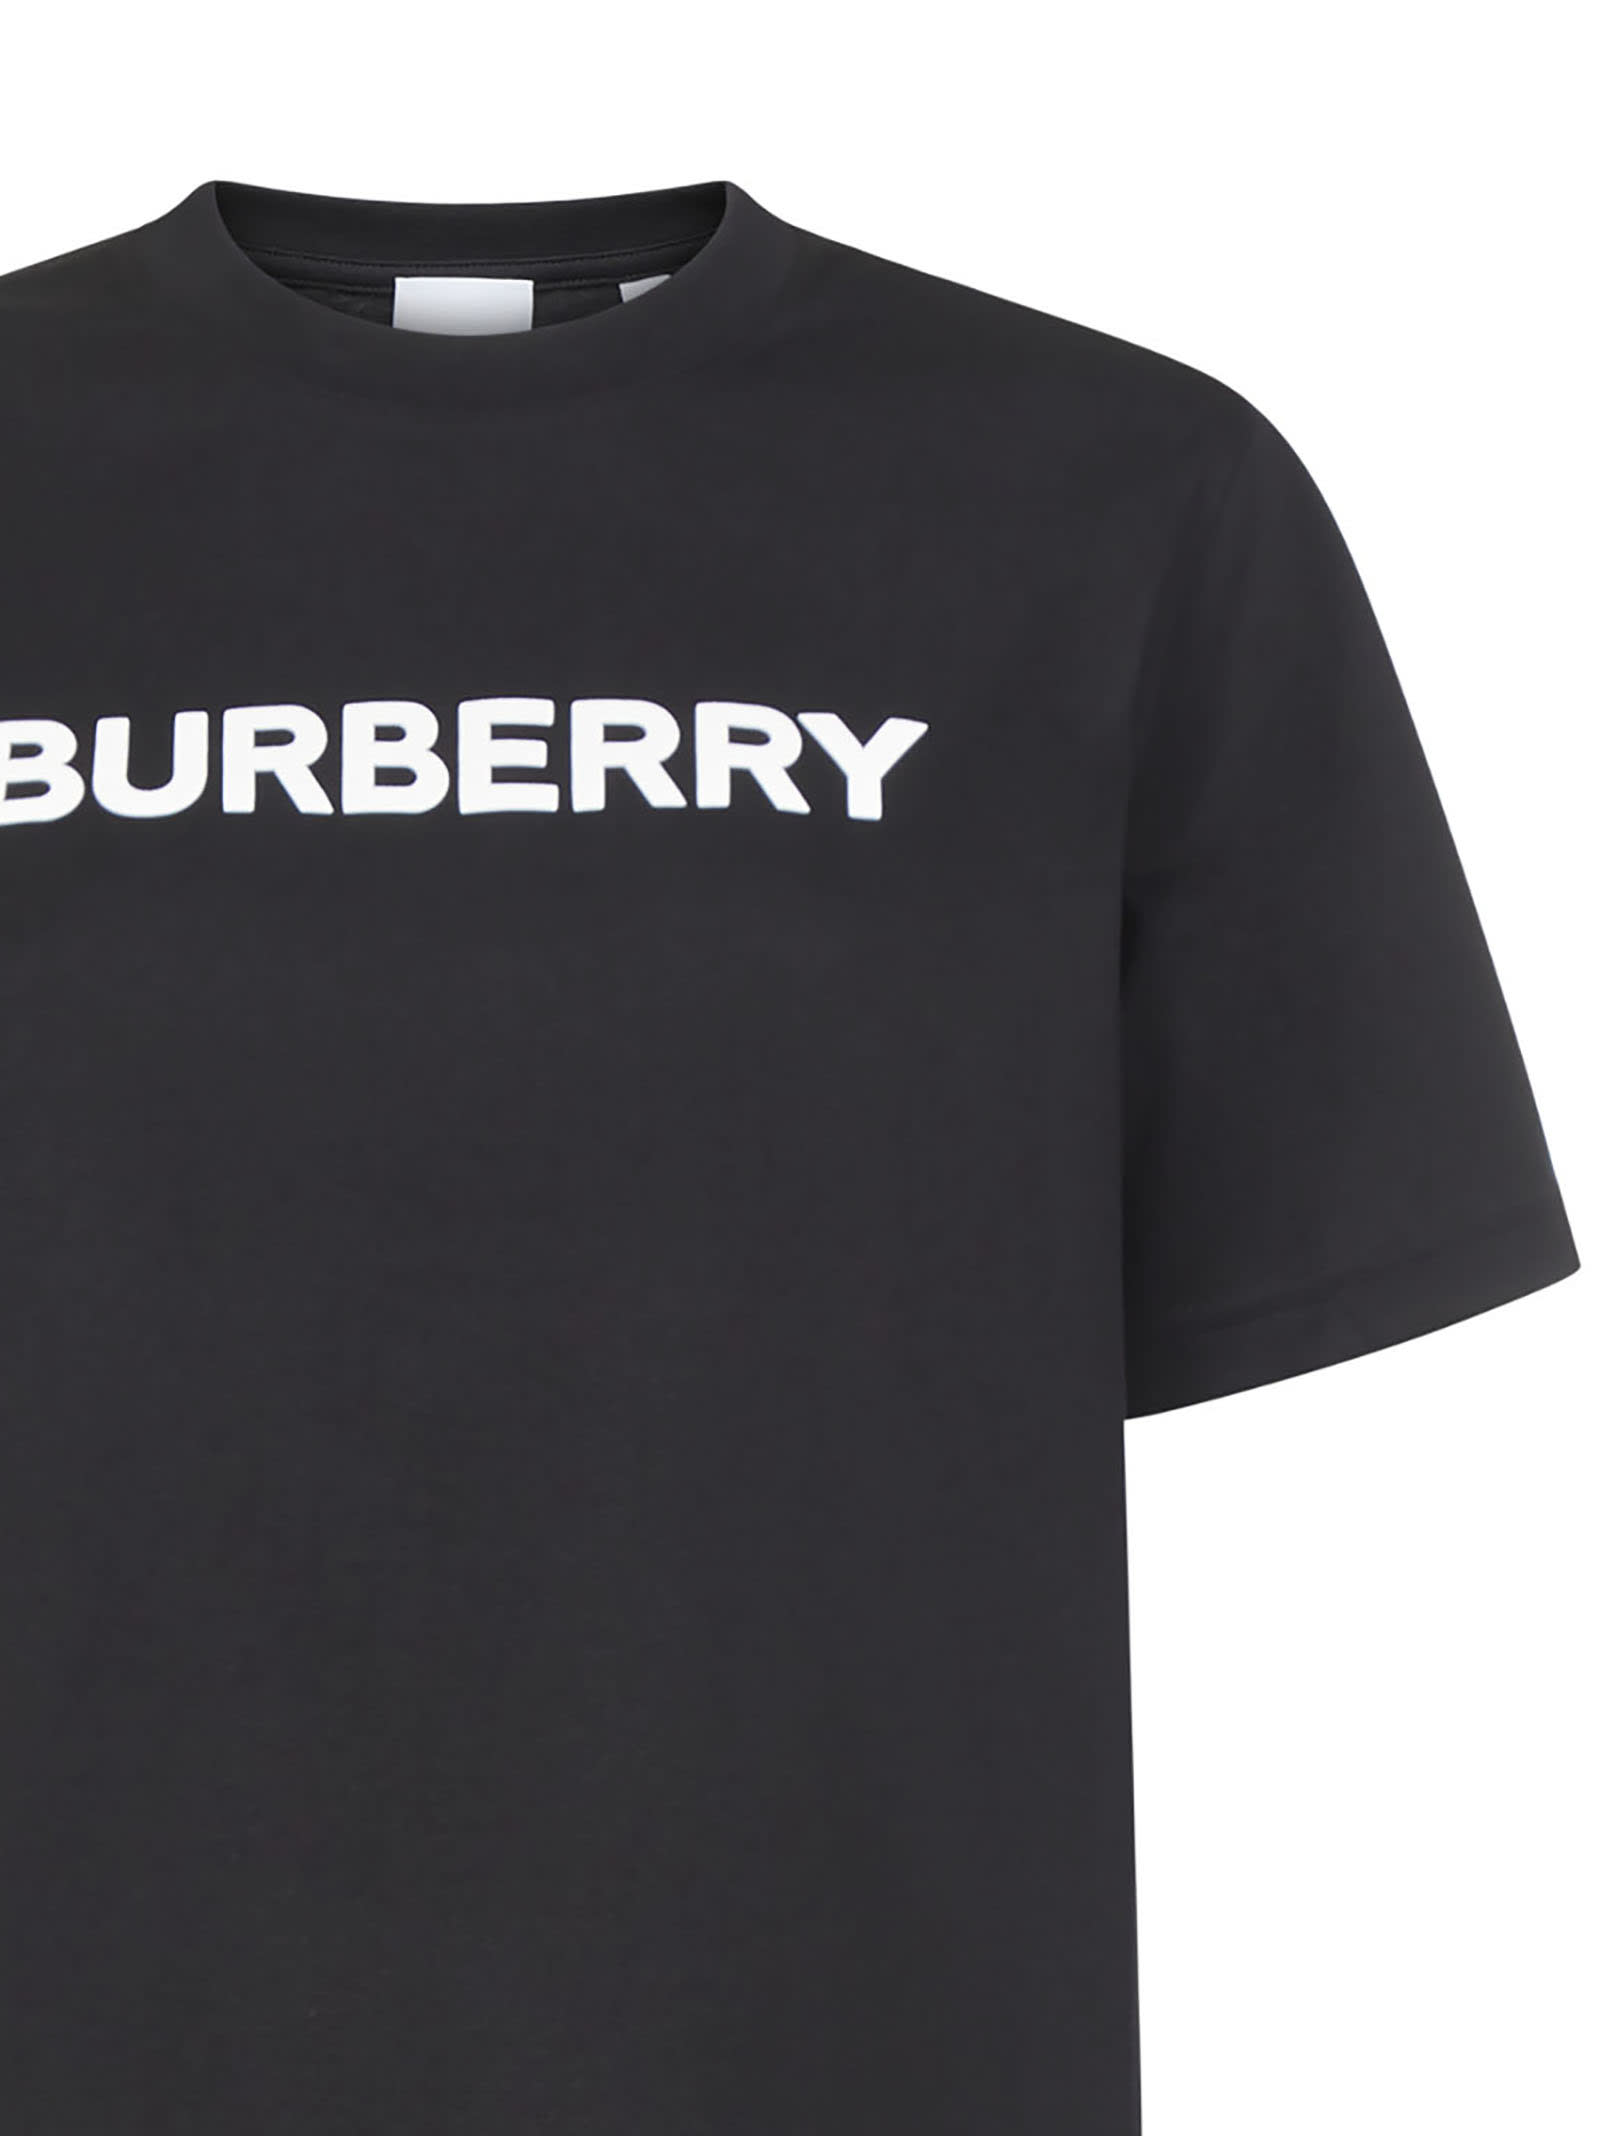 Burberry Women's Black Other Materials T Shirt | ModeSens